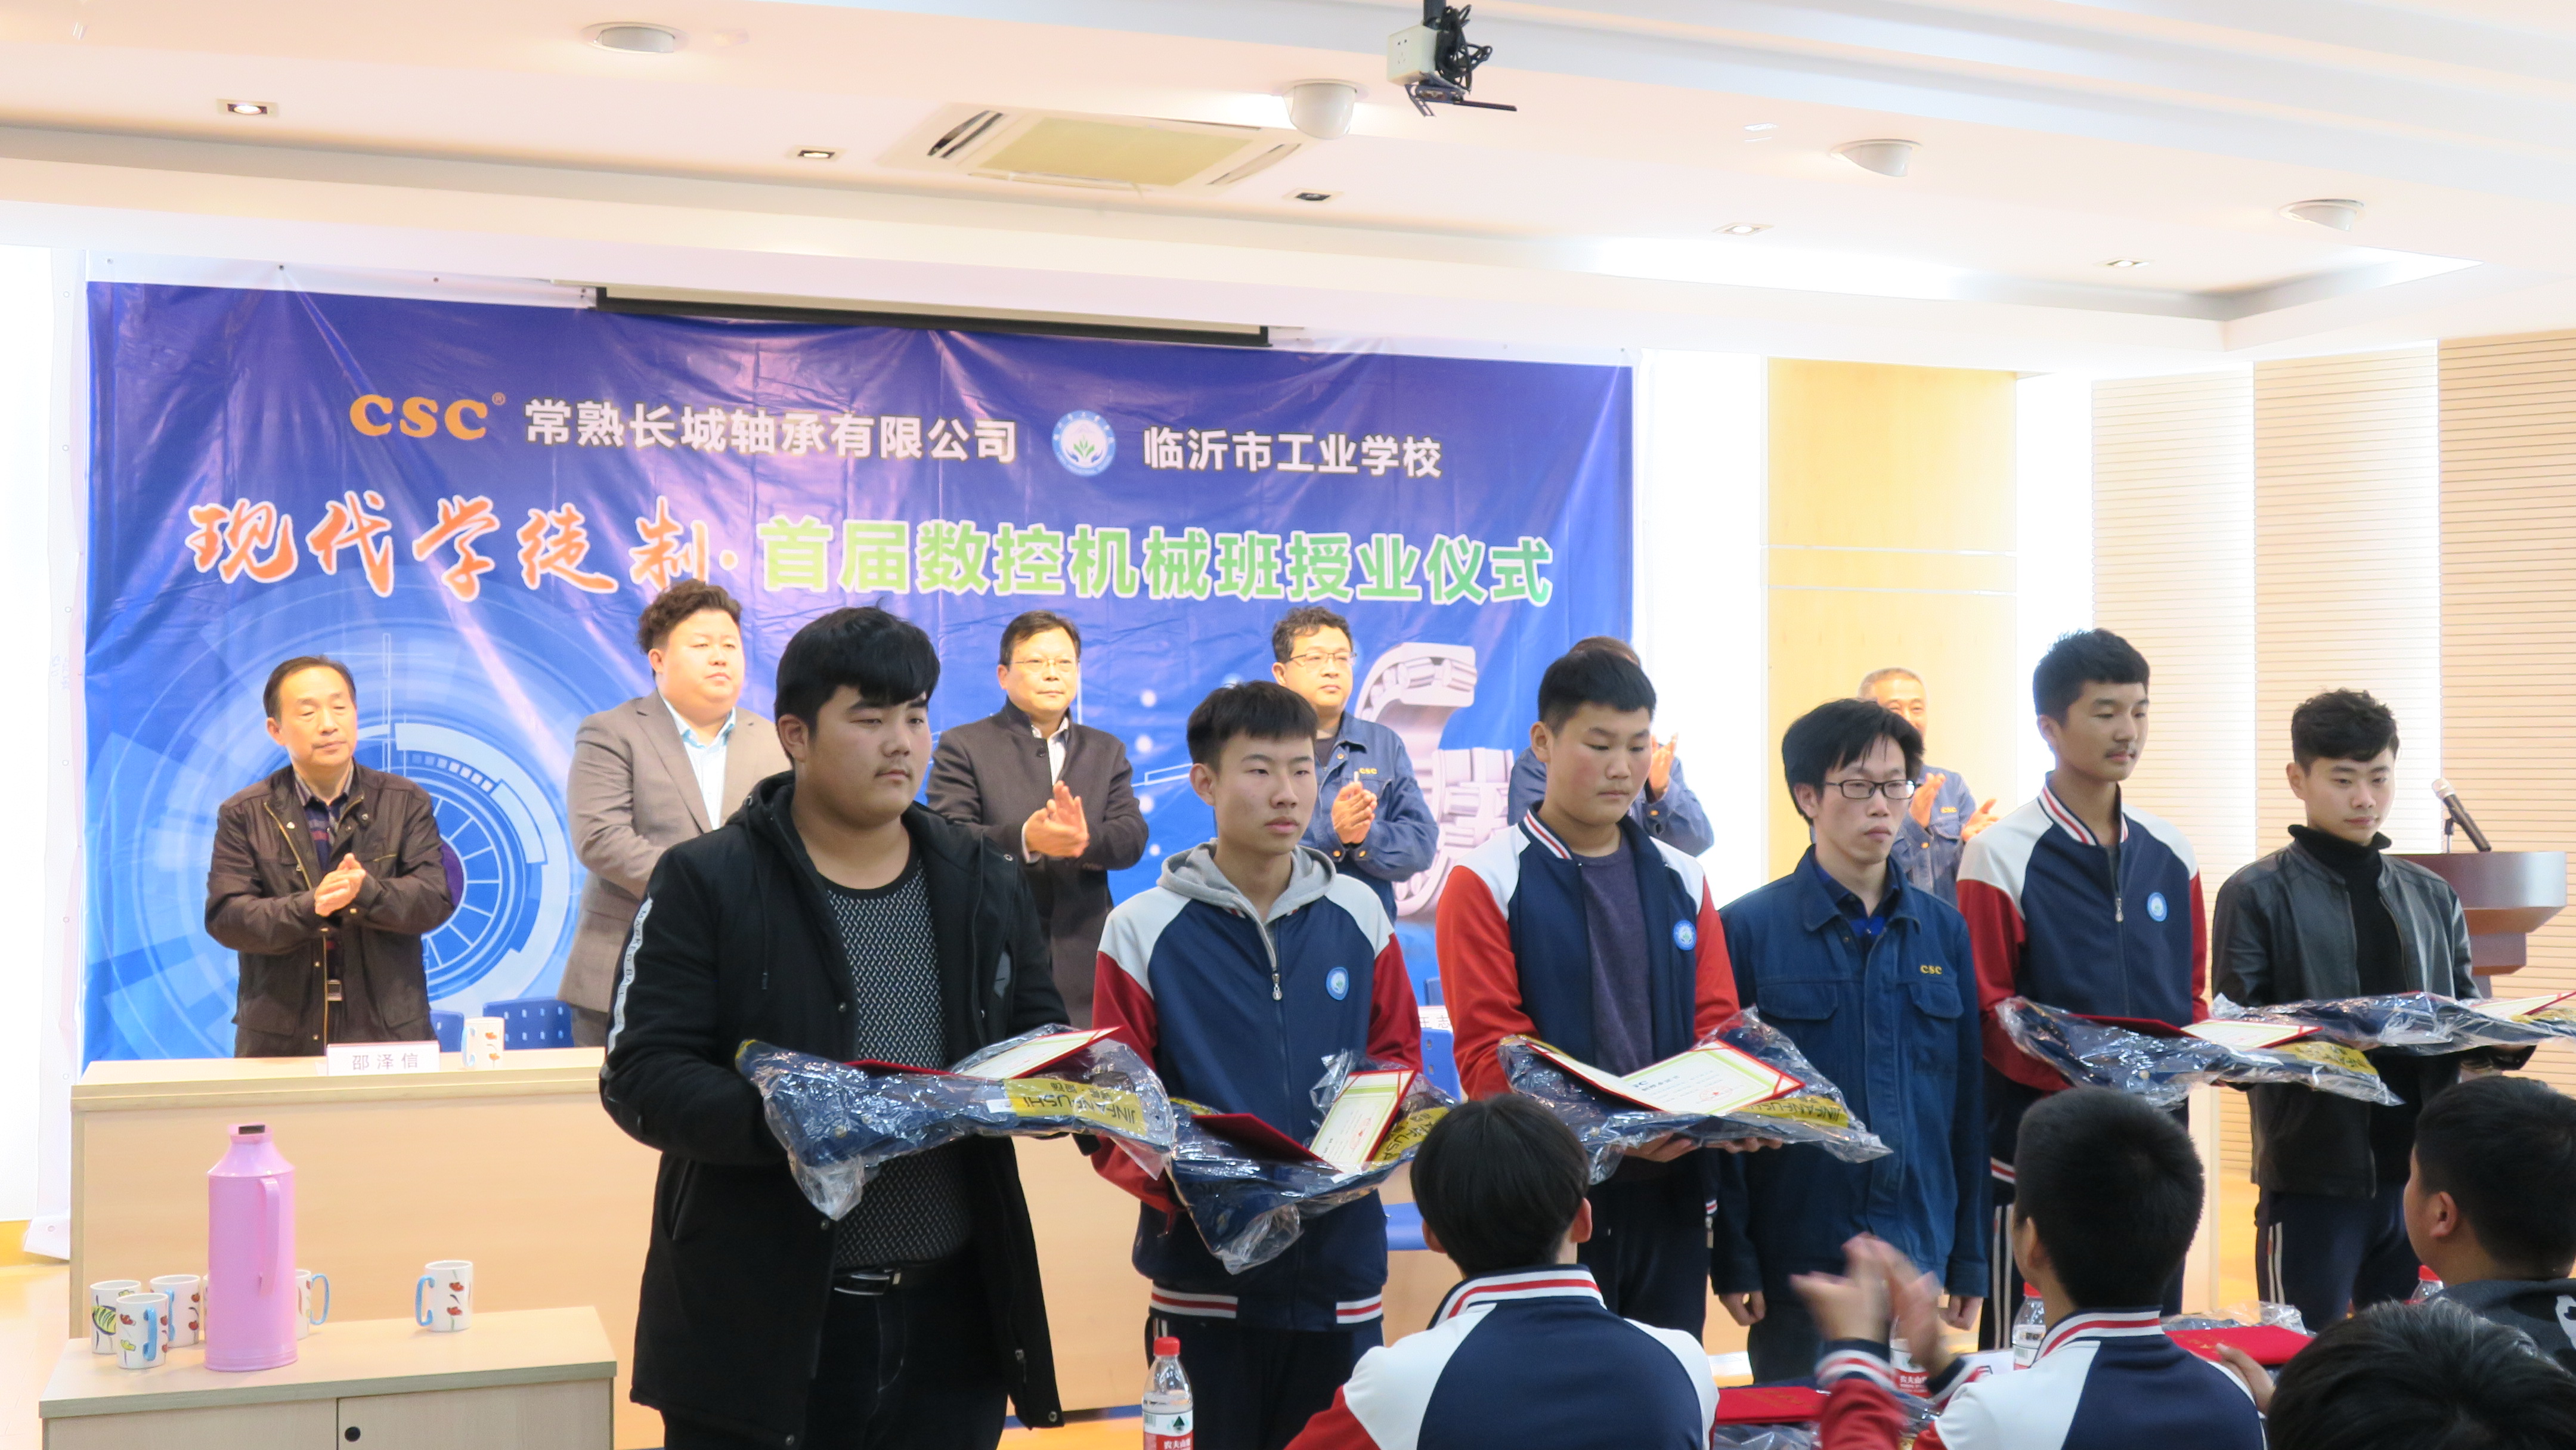 临沂市工业学校举行数控技术系现代学徒制班拜师仪式